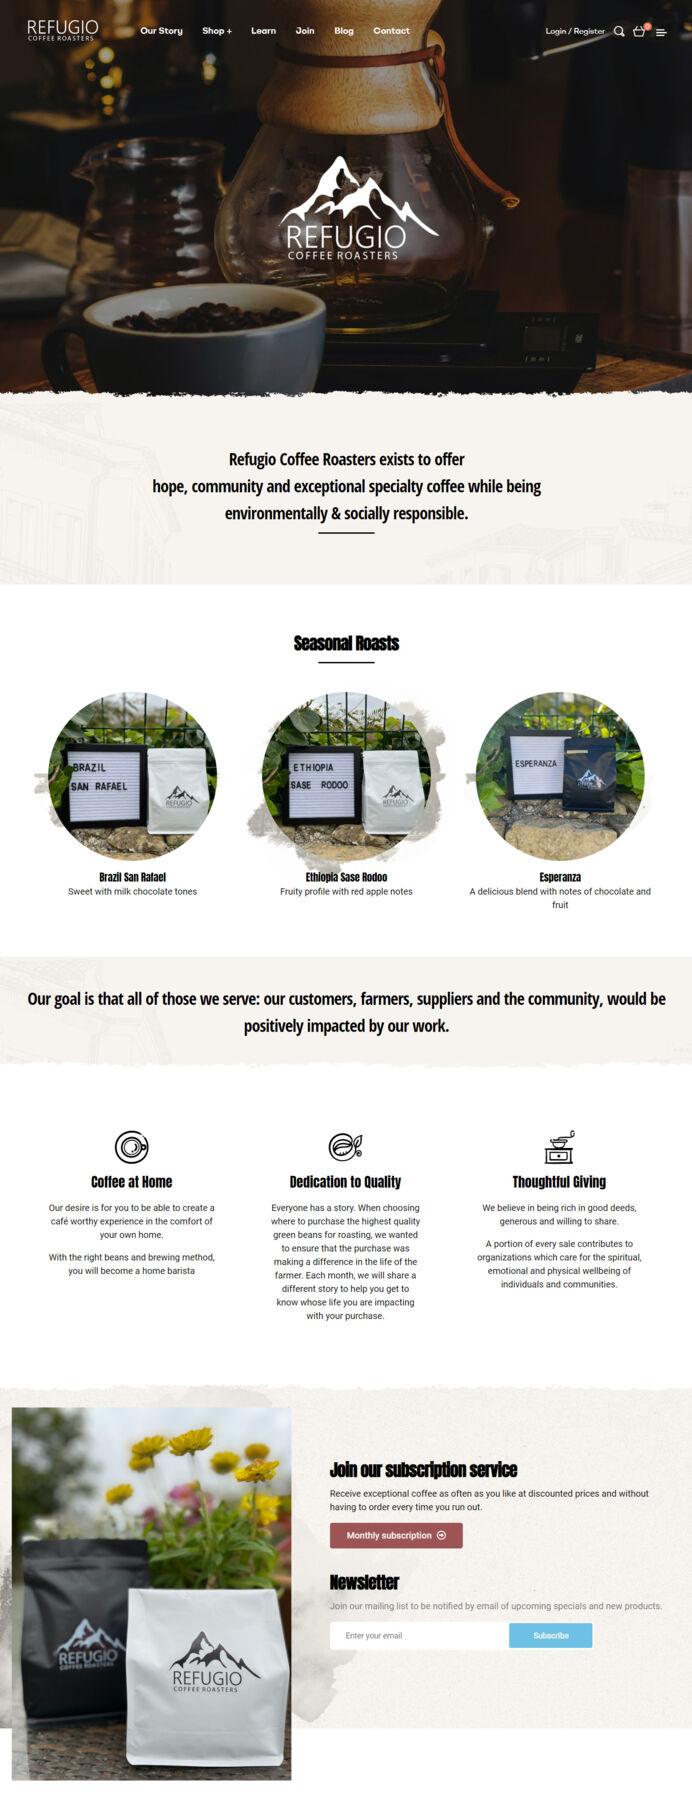 Diseño web de la página de Refugio Coffee Roasters empresa en Marbella